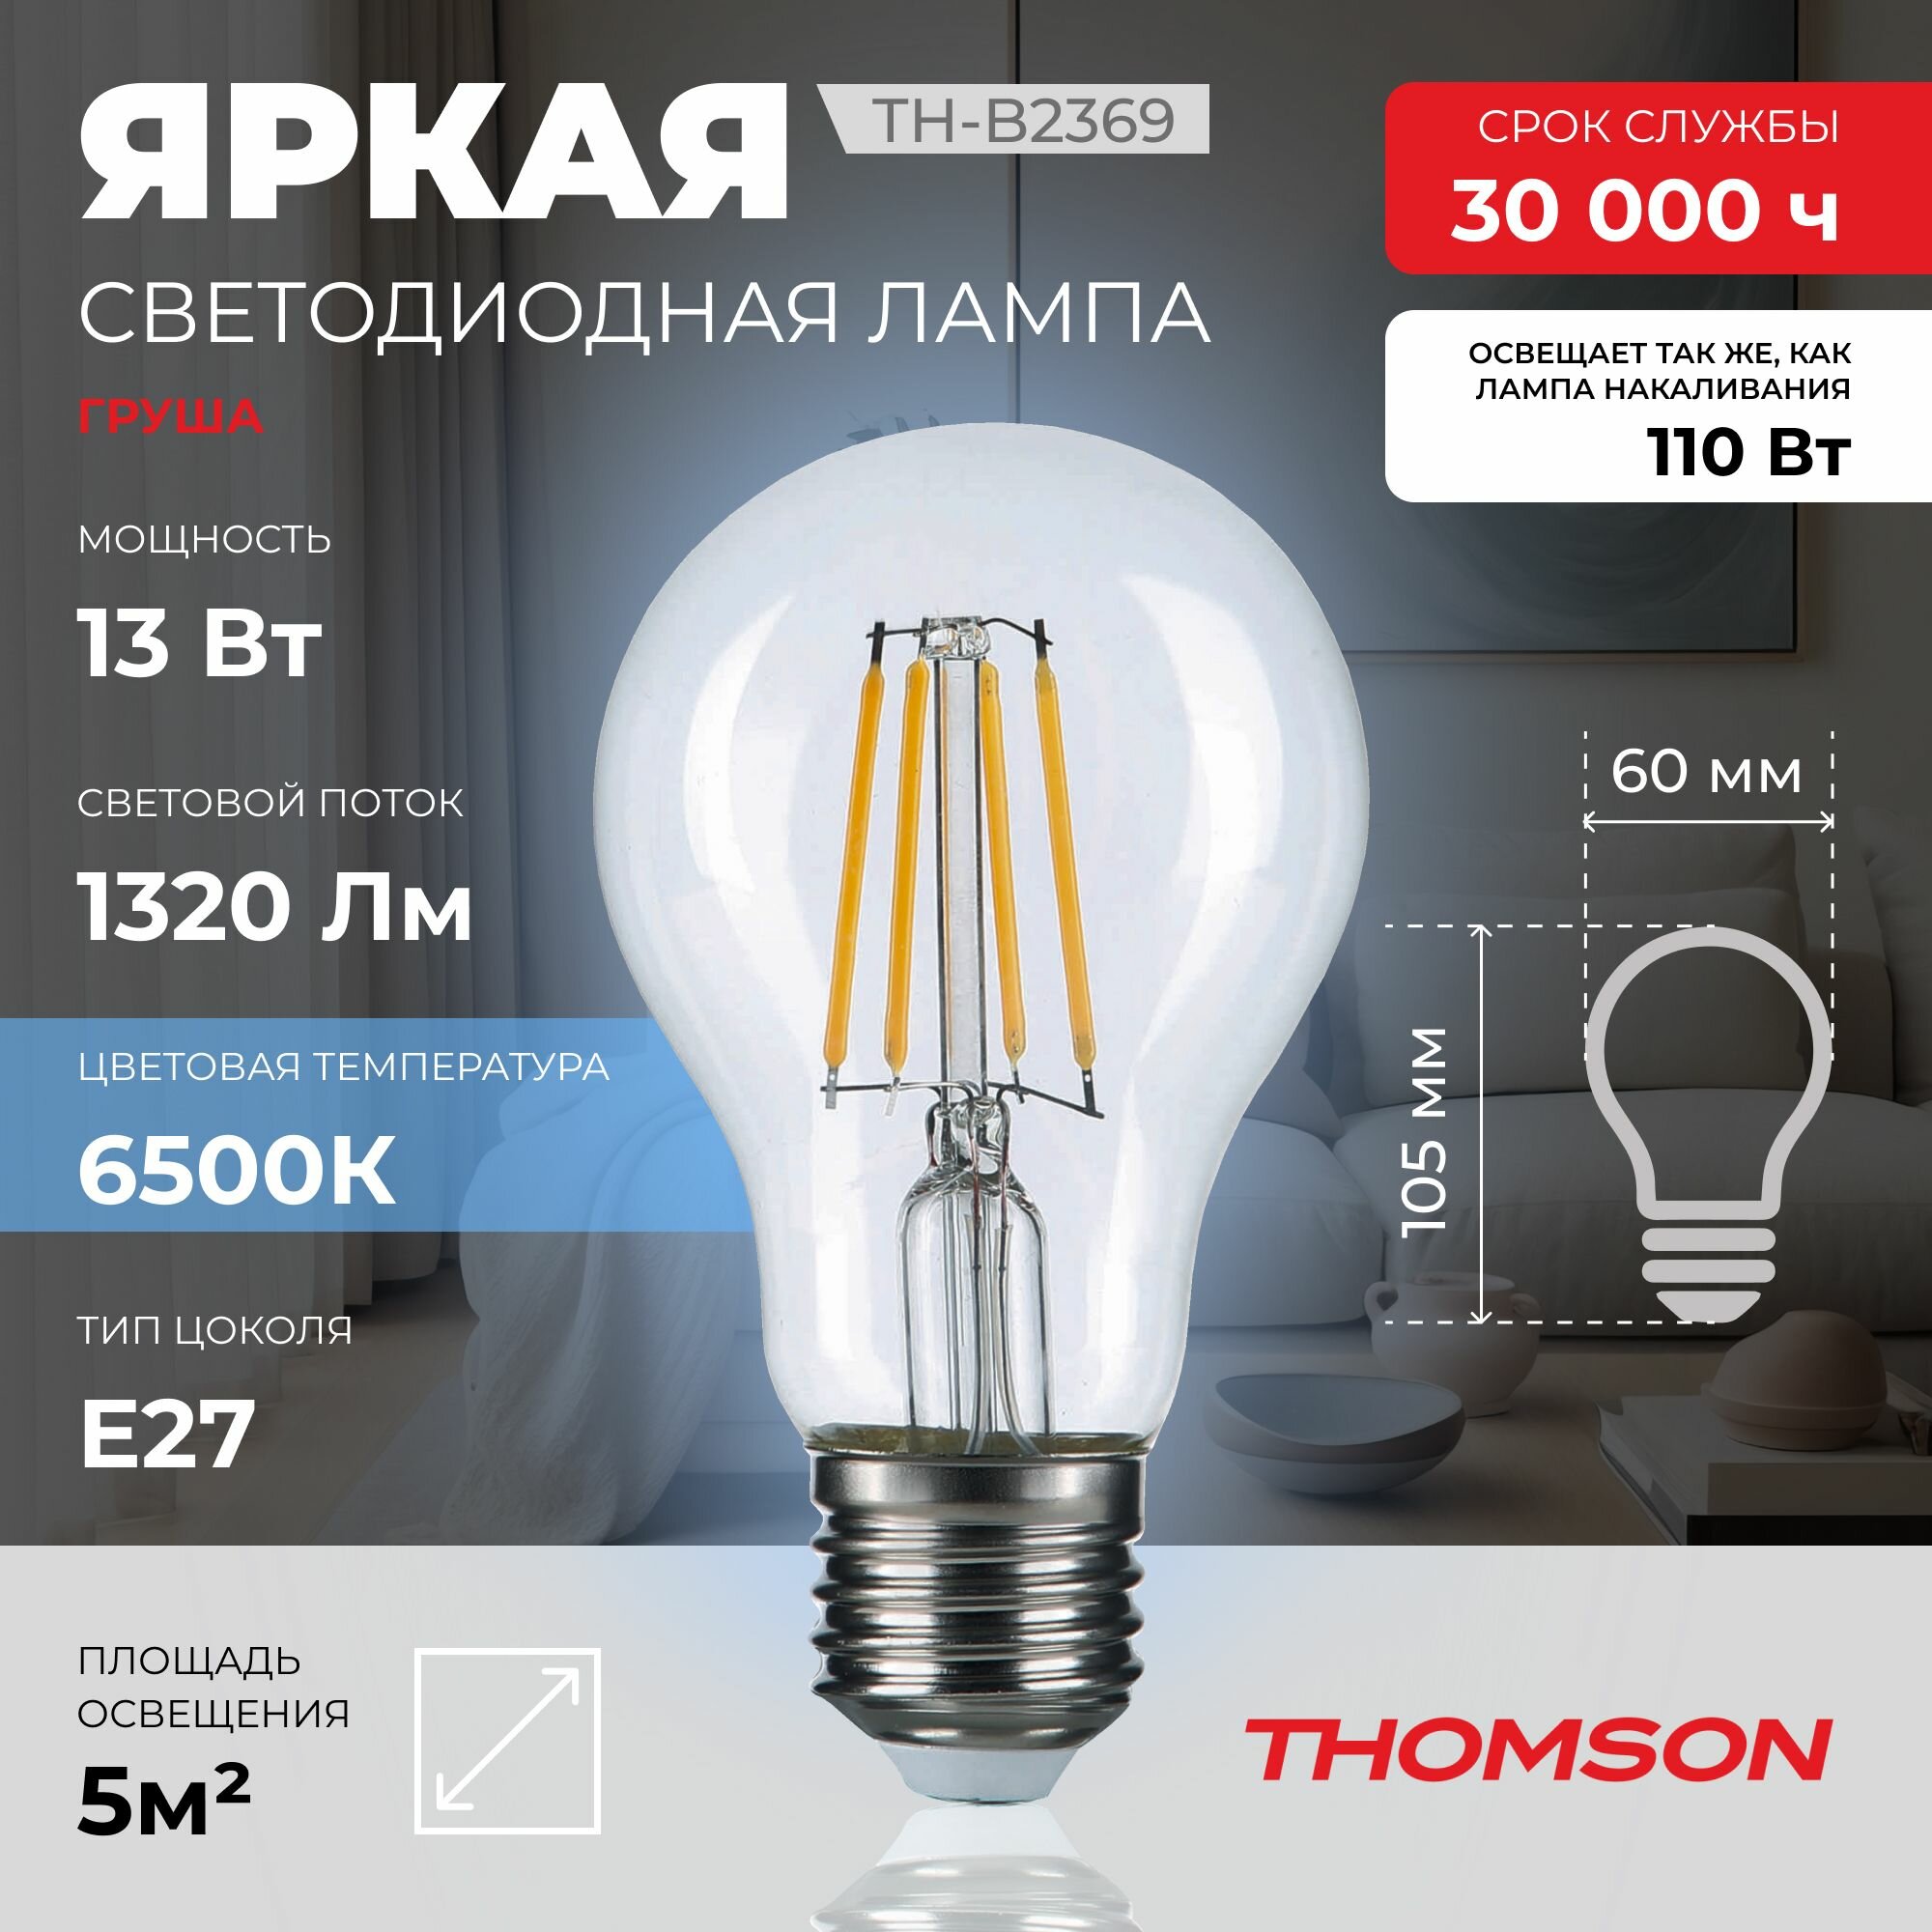 Лампочка Thomson филаментная TH-B2369 13 Вт, E27, 6500K, груша, холодный белый свет